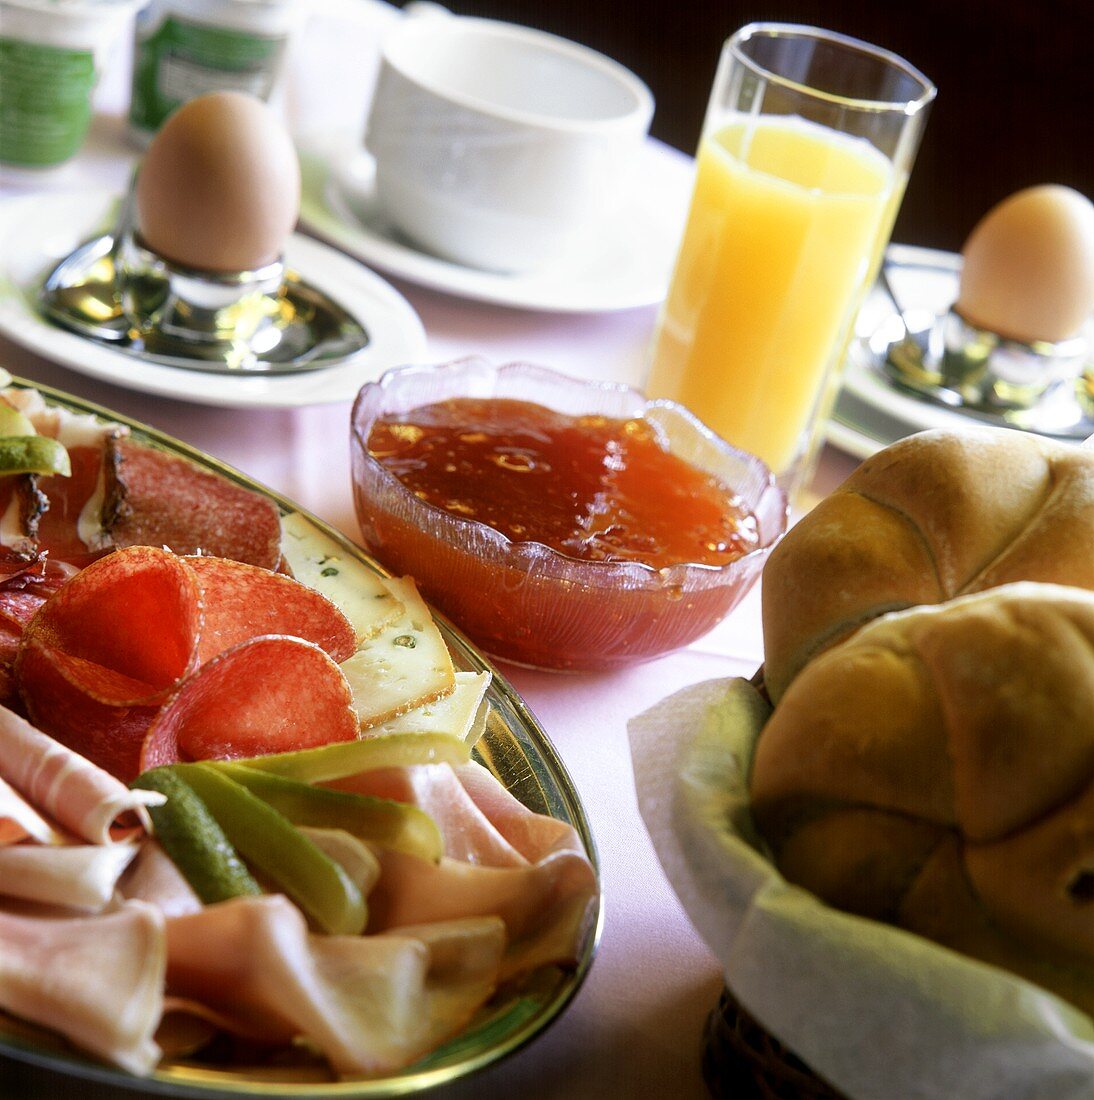 Frühstück mit Wurst, Brötchen, Marmelade, Ei und Orangensaft